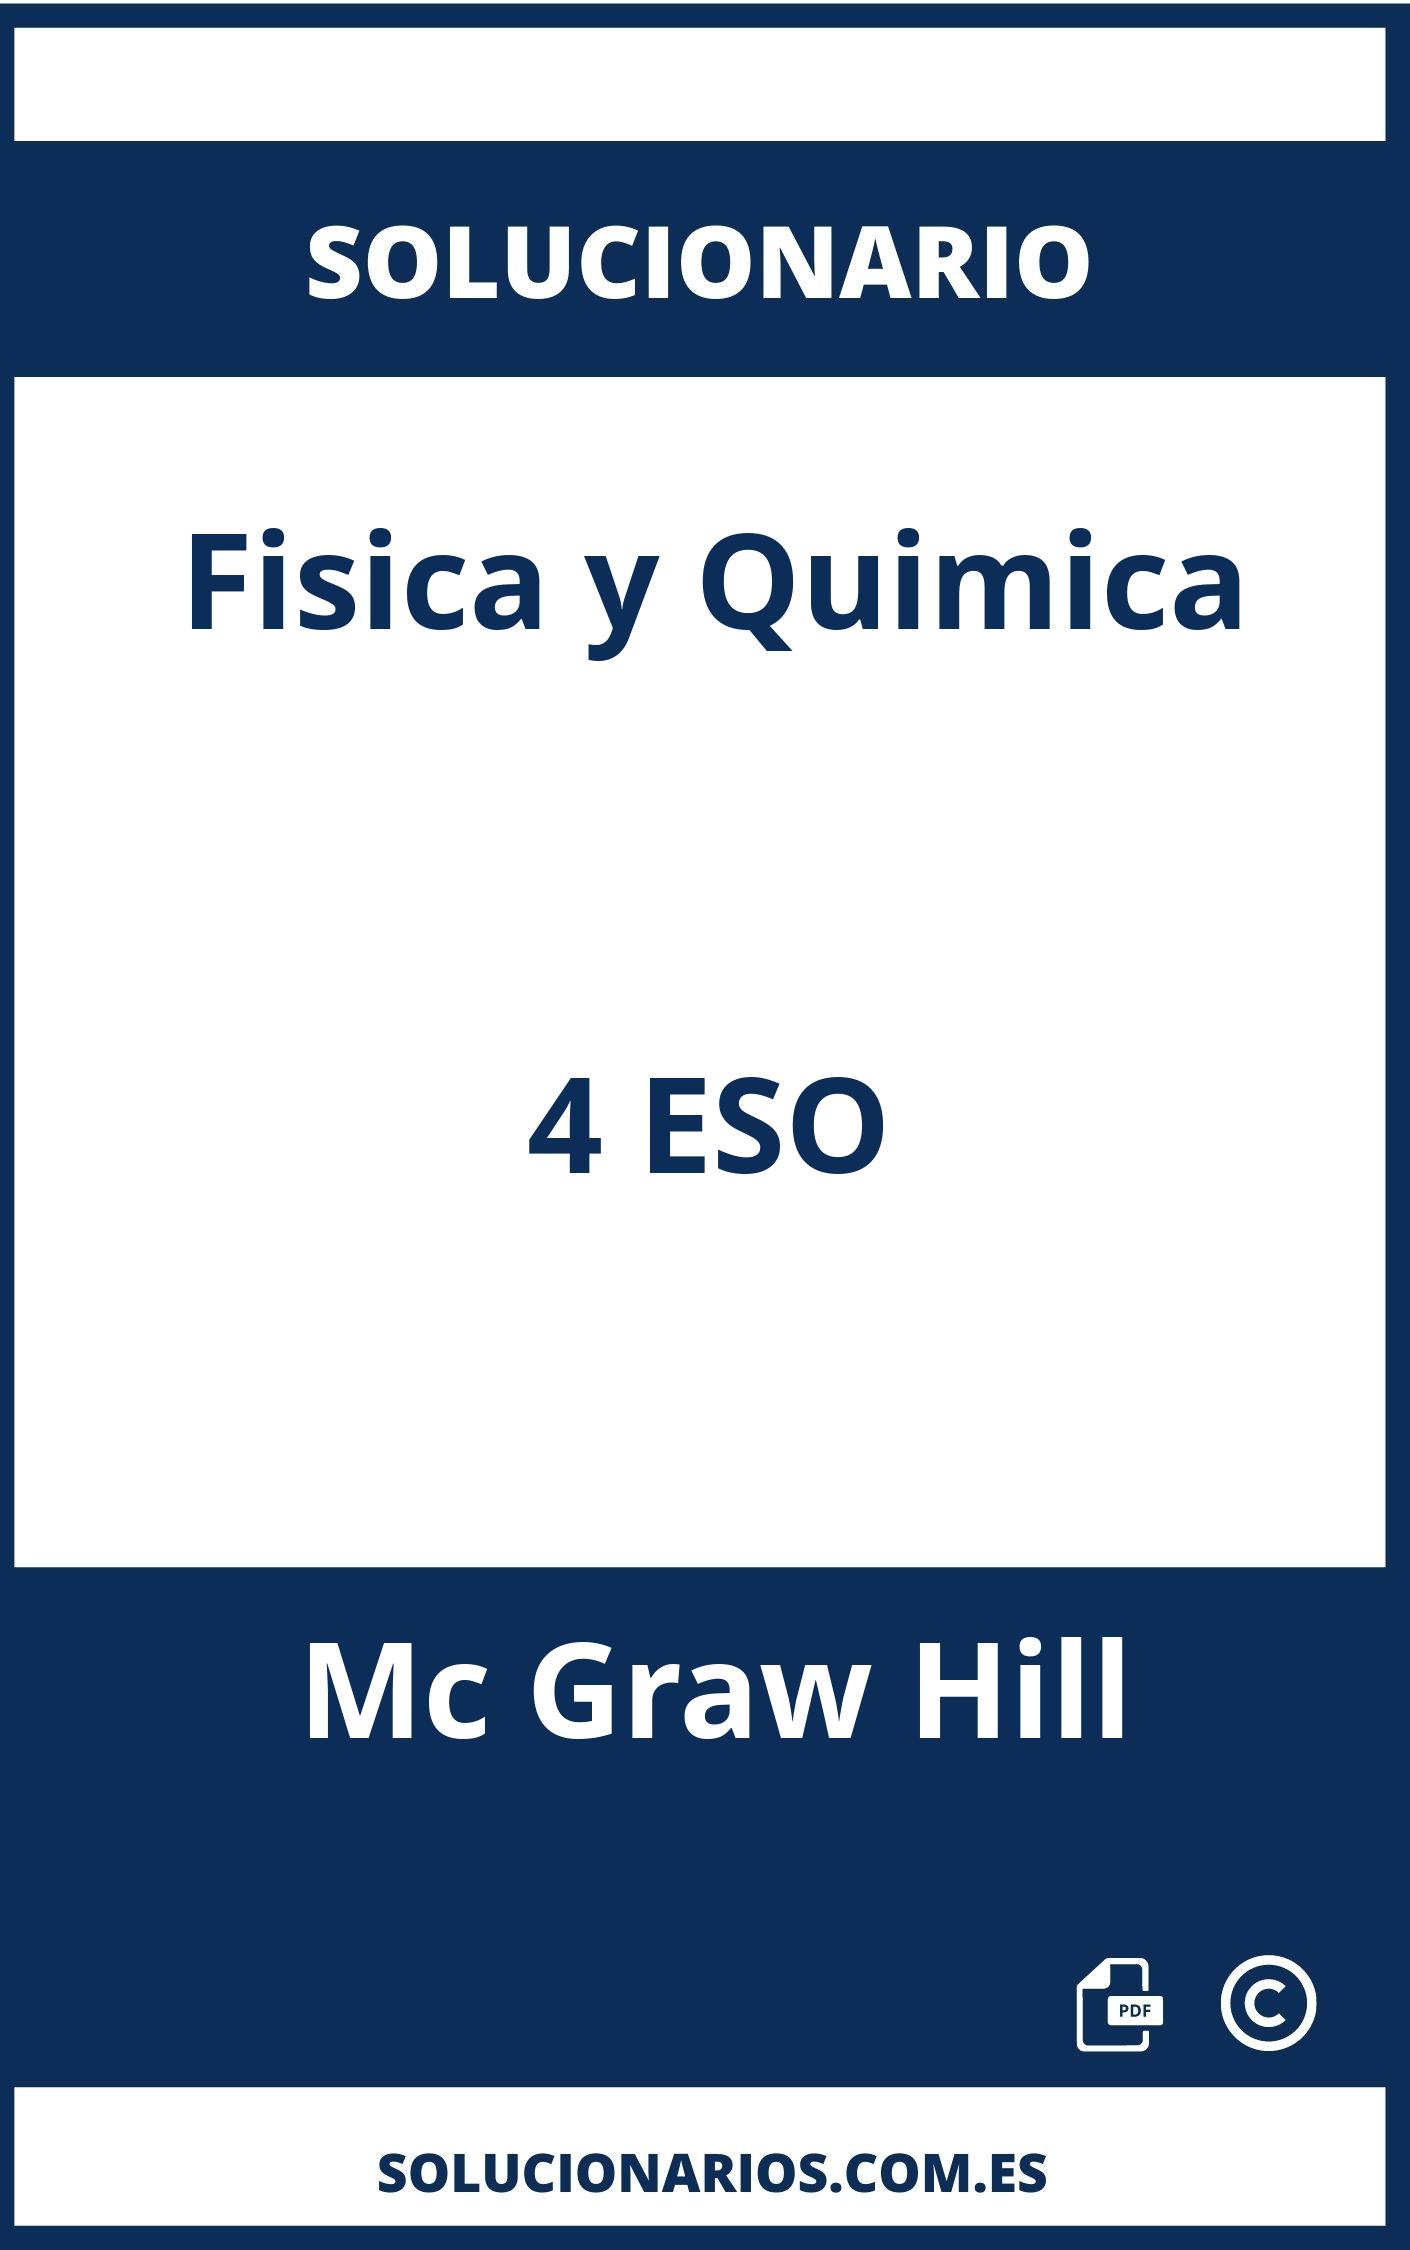 Solucionario Fisica y Quimica 4 ESO Mc Graw Hill